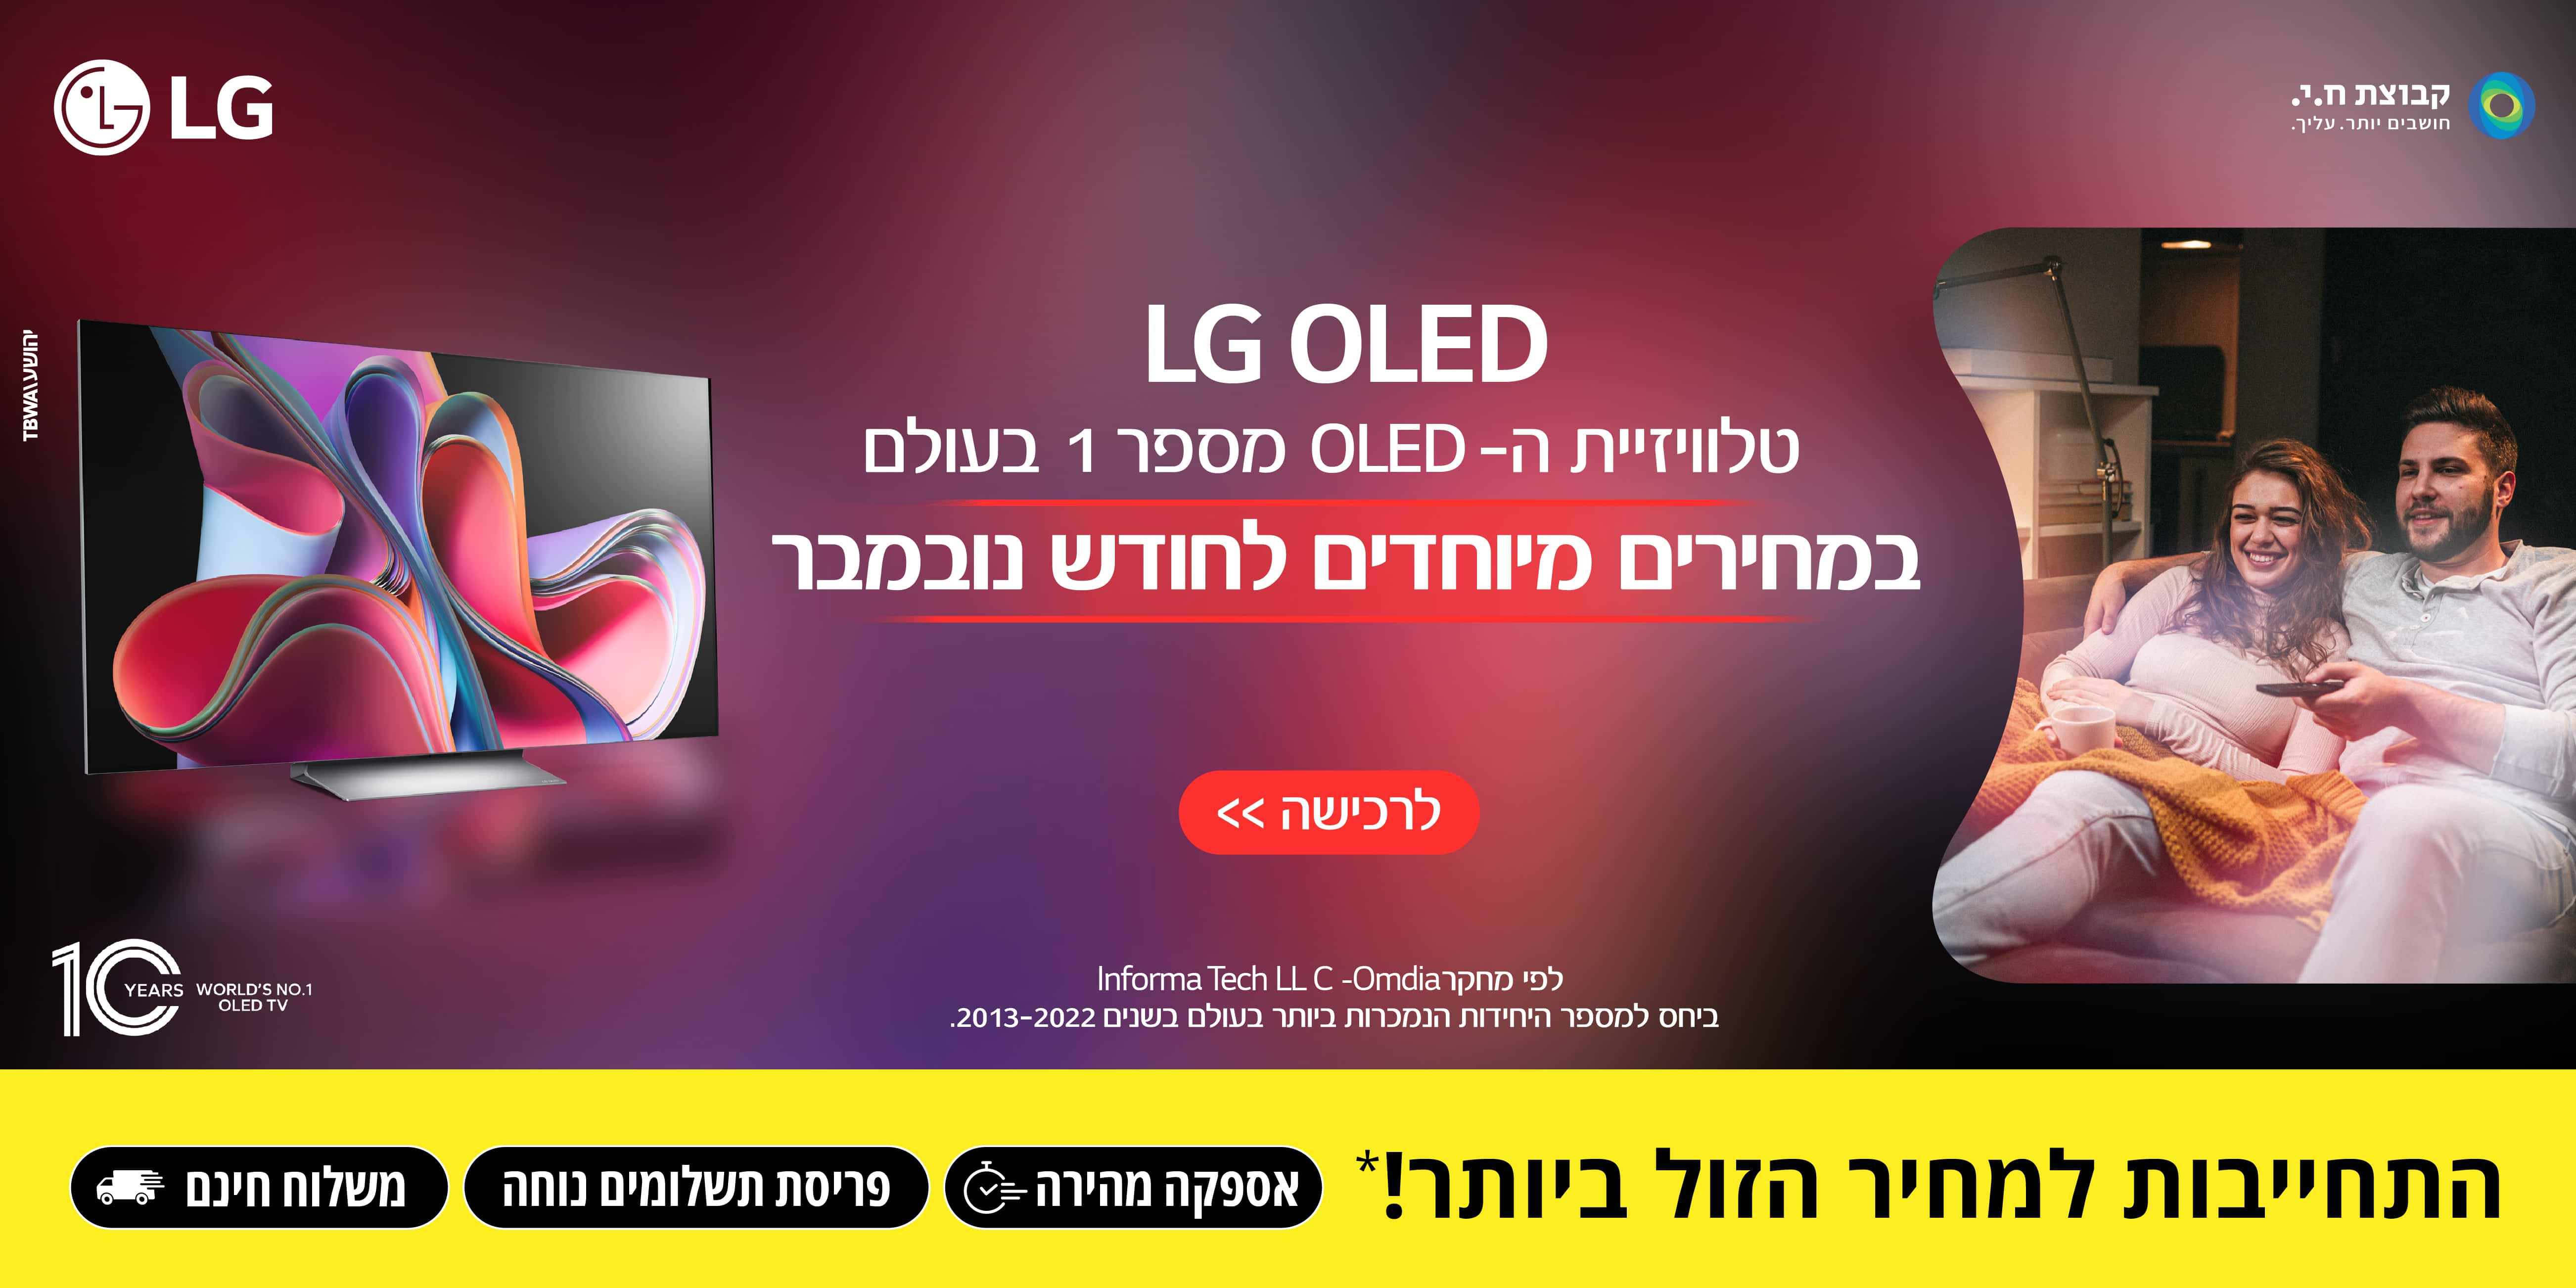 LG OLED טלוויזיית ה-OLED מספר 1 בעולם במחירים מיוחדים לחודש נובמבר